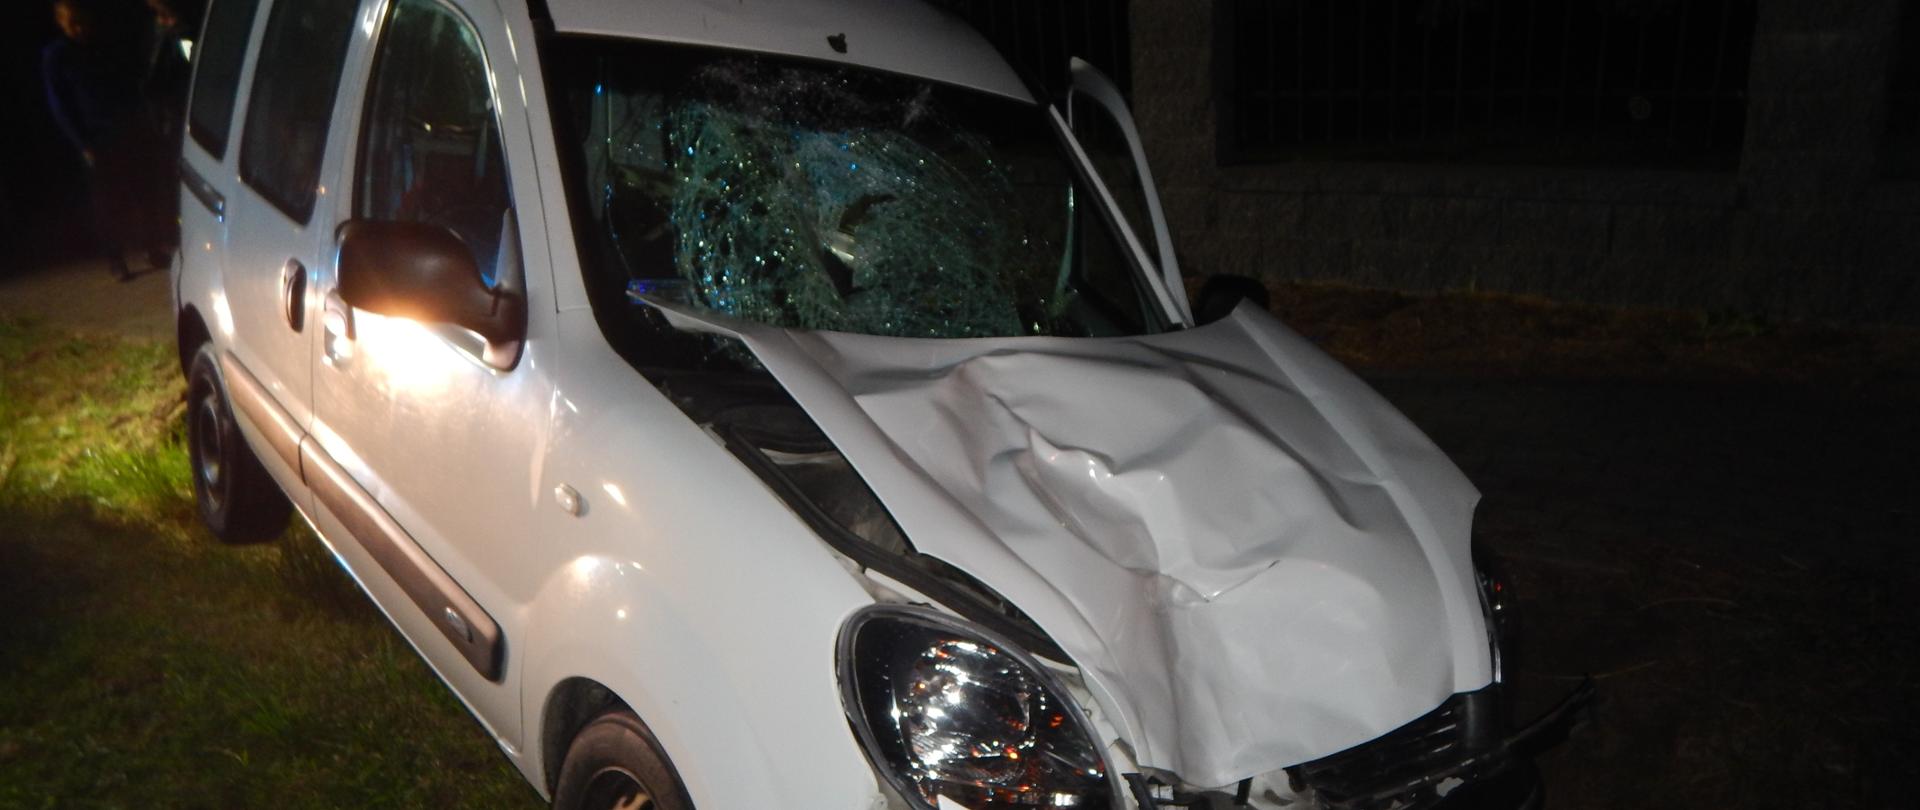 Zdjęcie przedstawia uszkodzony przód samochodu osobowego oraz rozbitą przednią szybę